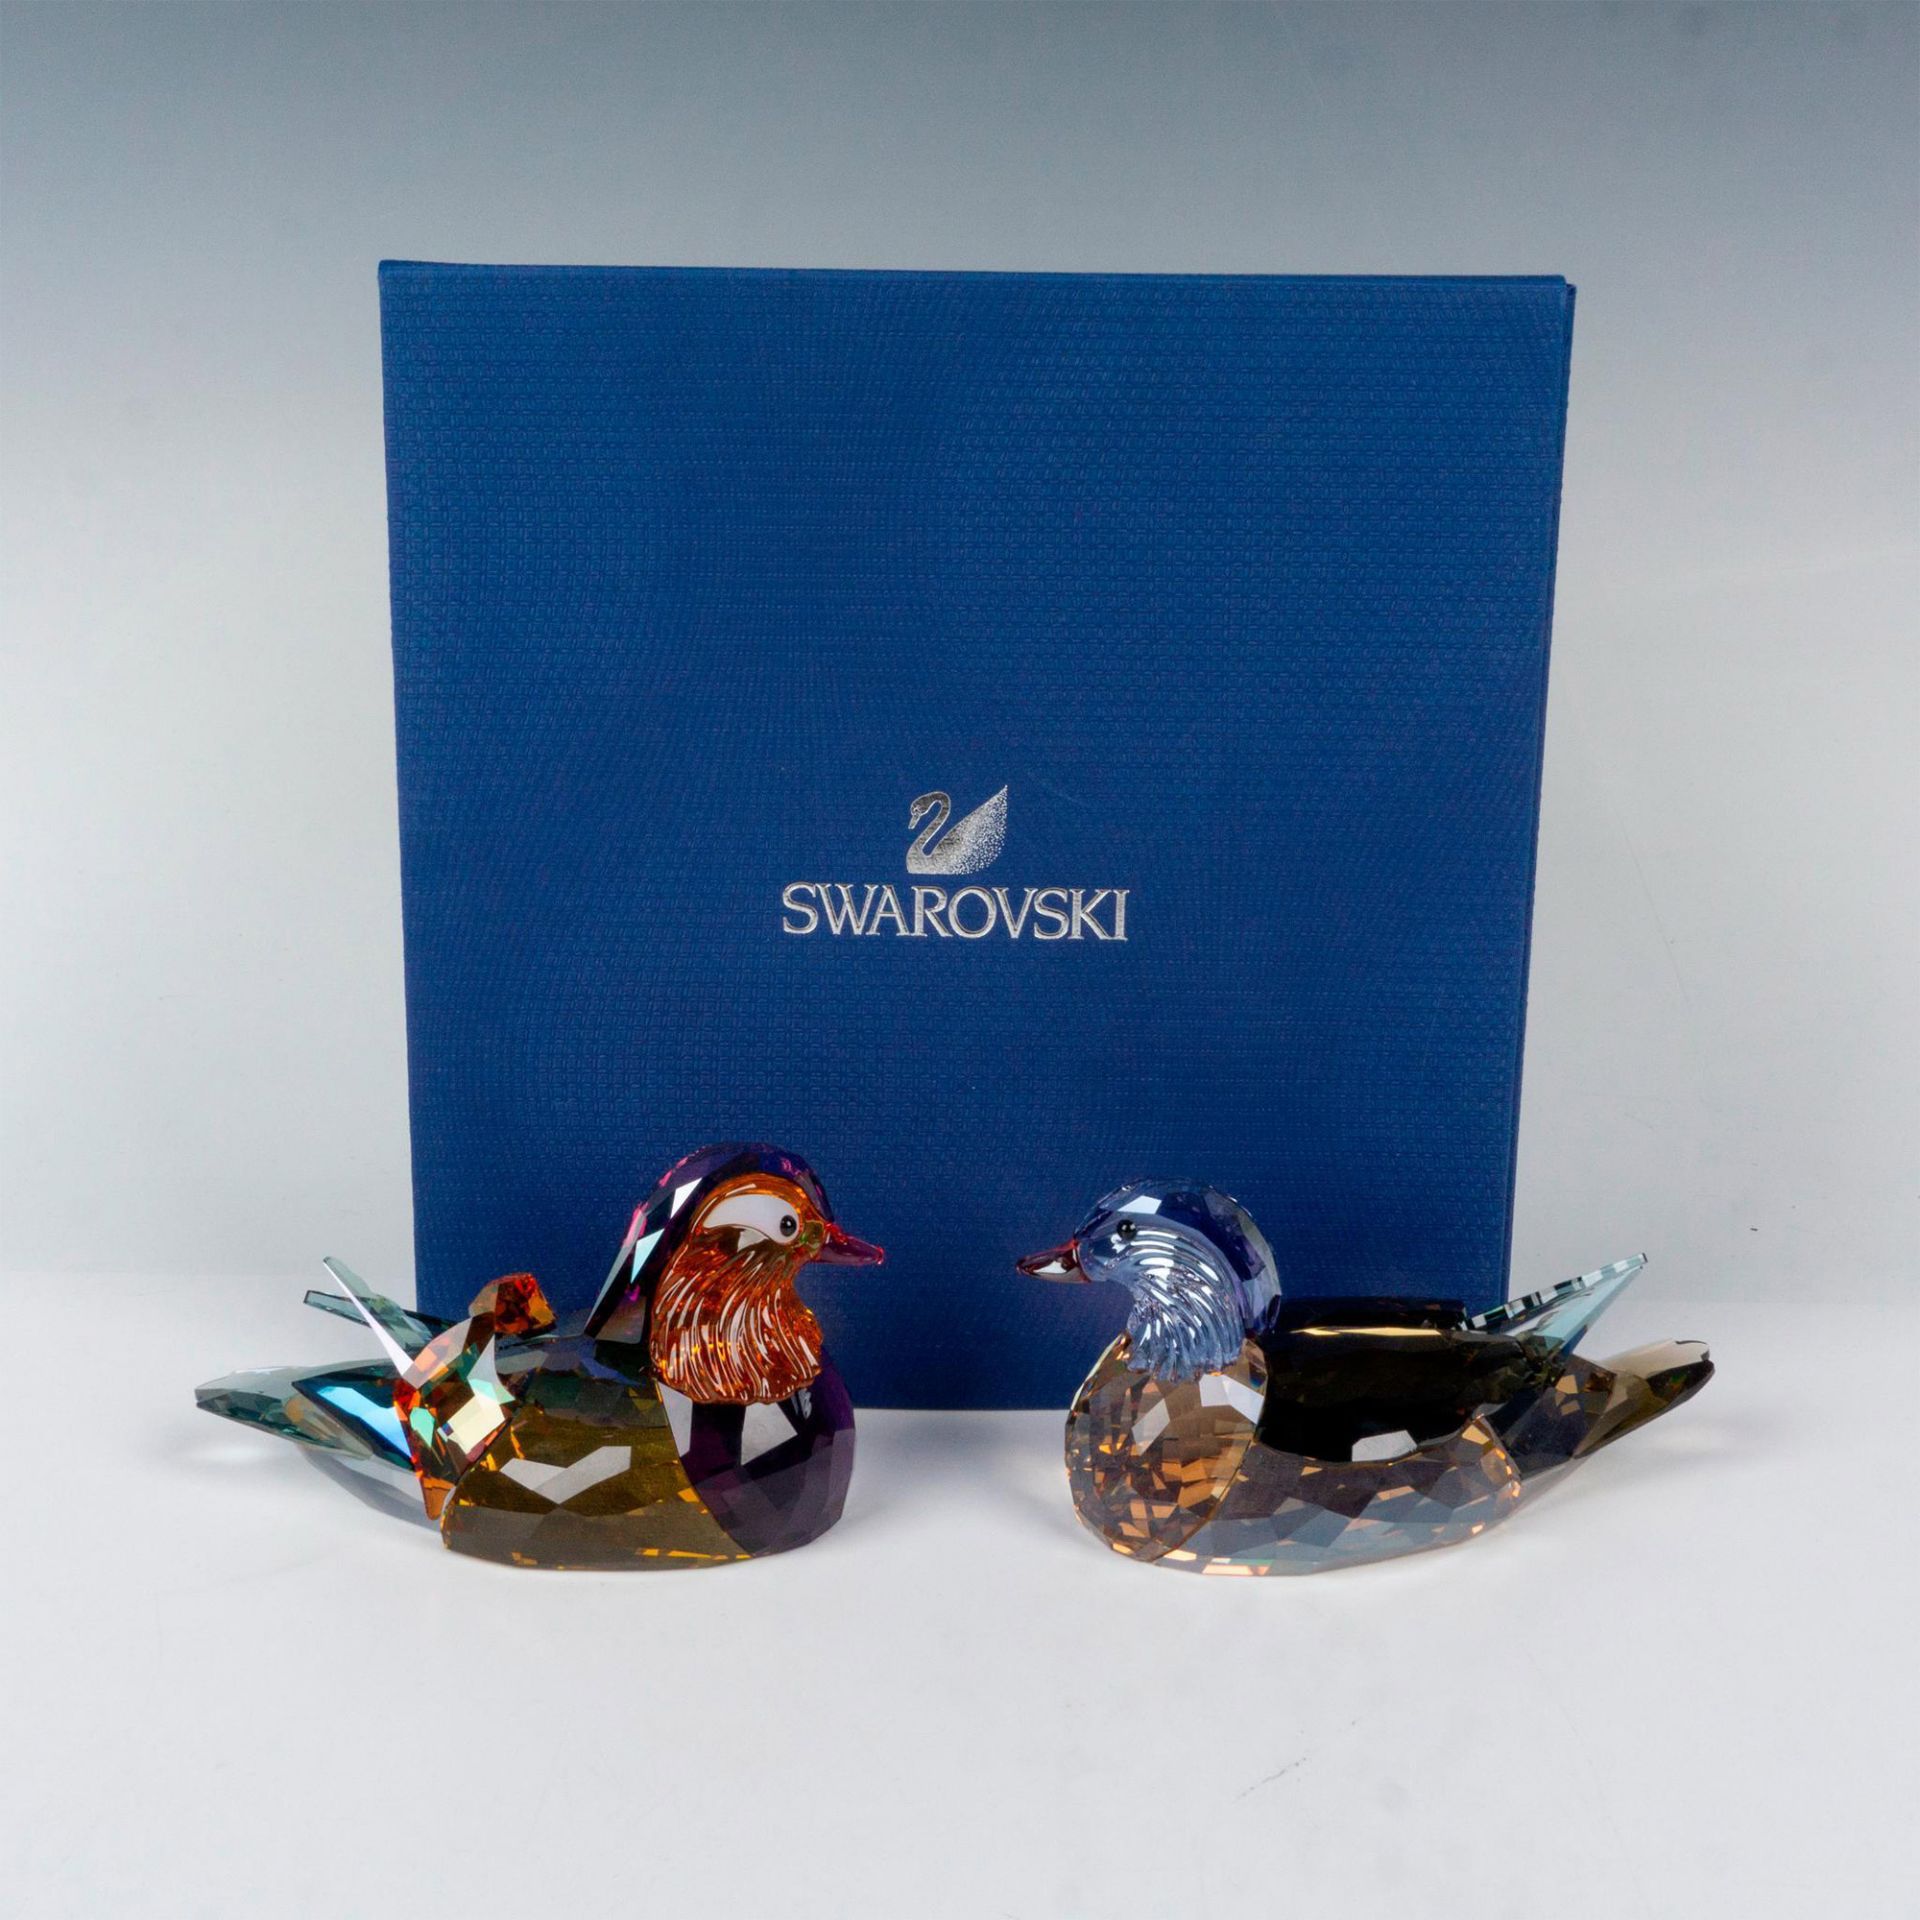 Swarovski Crystal Figurines, Mandarin Ducks - Image 4 of 4